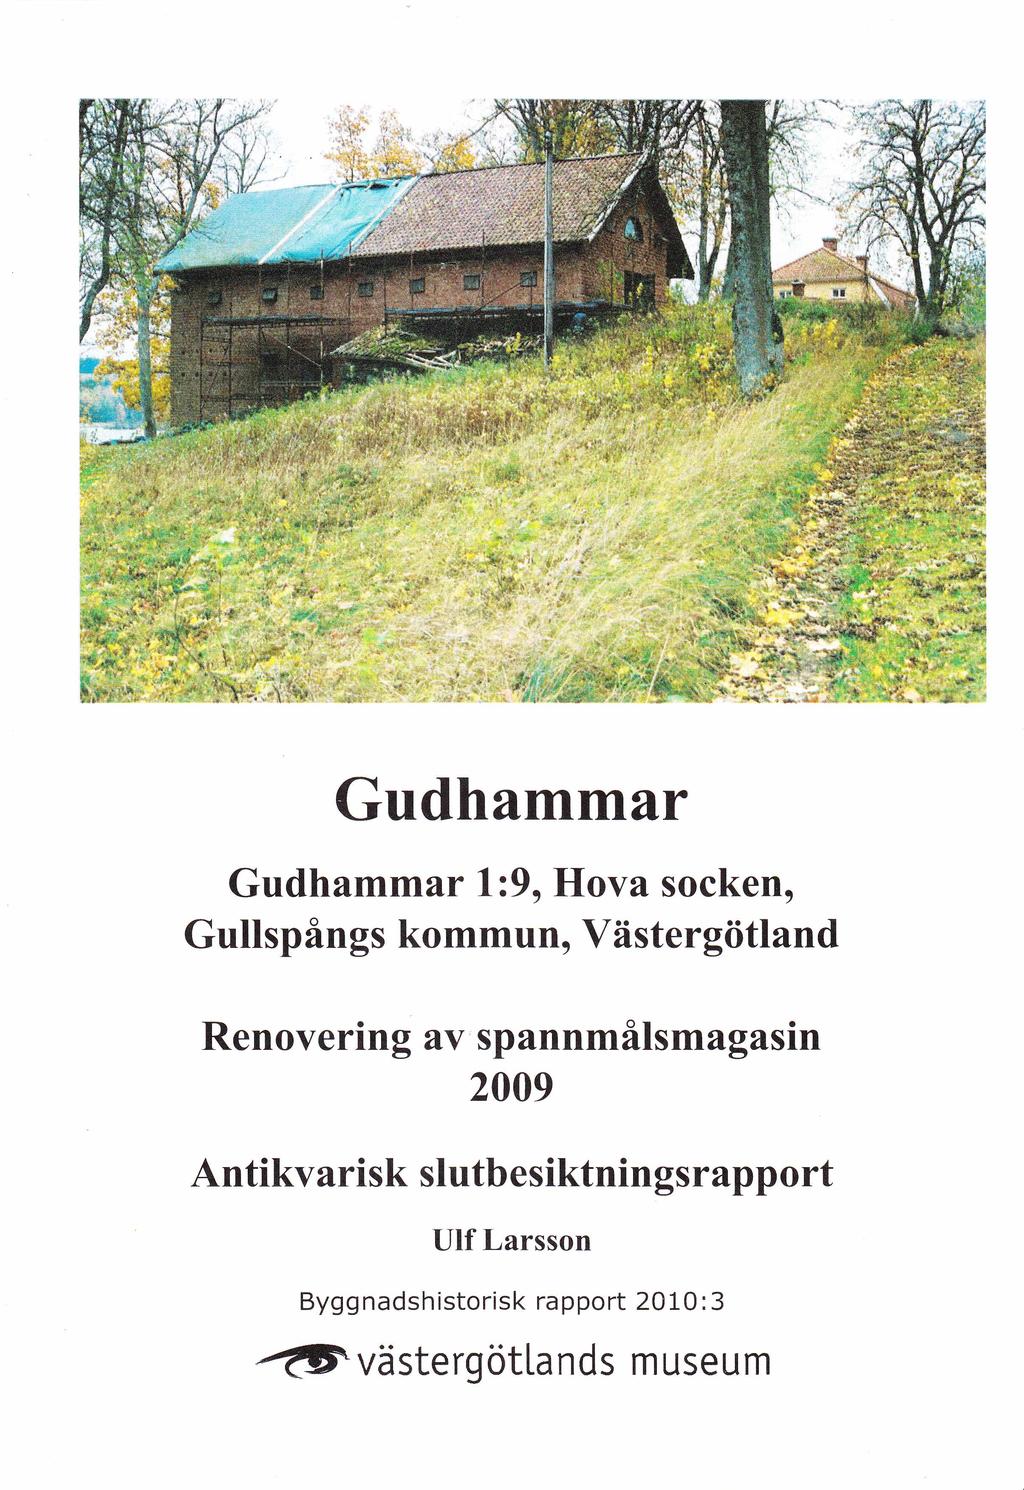 Gudhammar, Hova socken, Gullspångs kommun, Västergötland Renovering av spannmålsmagasin 2009